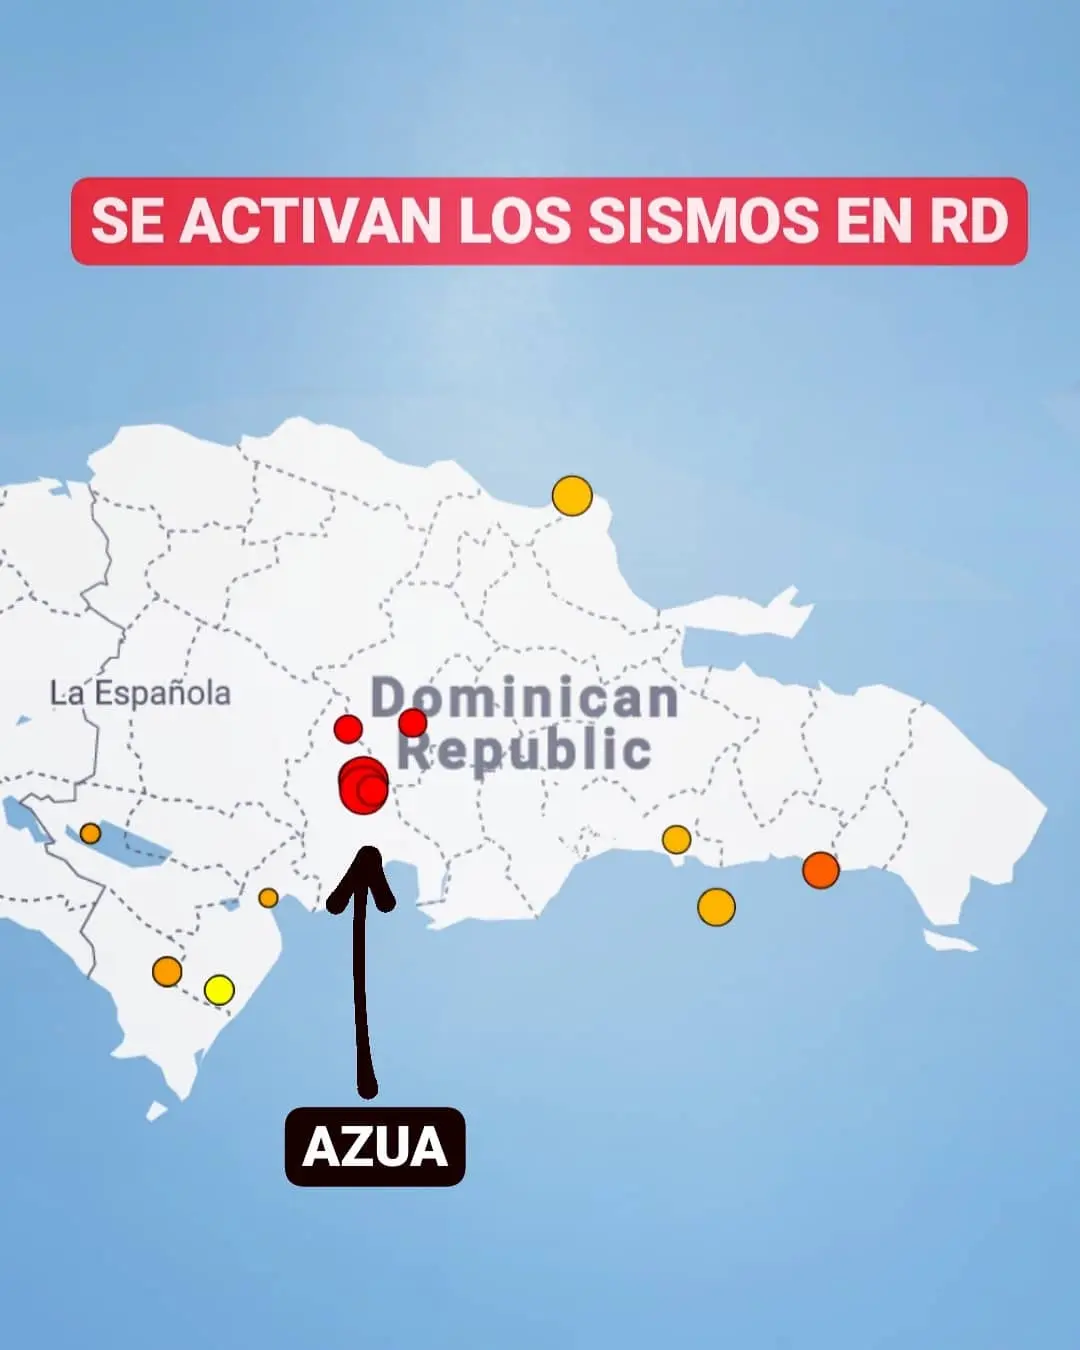 Se registró temblor de 4.2 en Azua